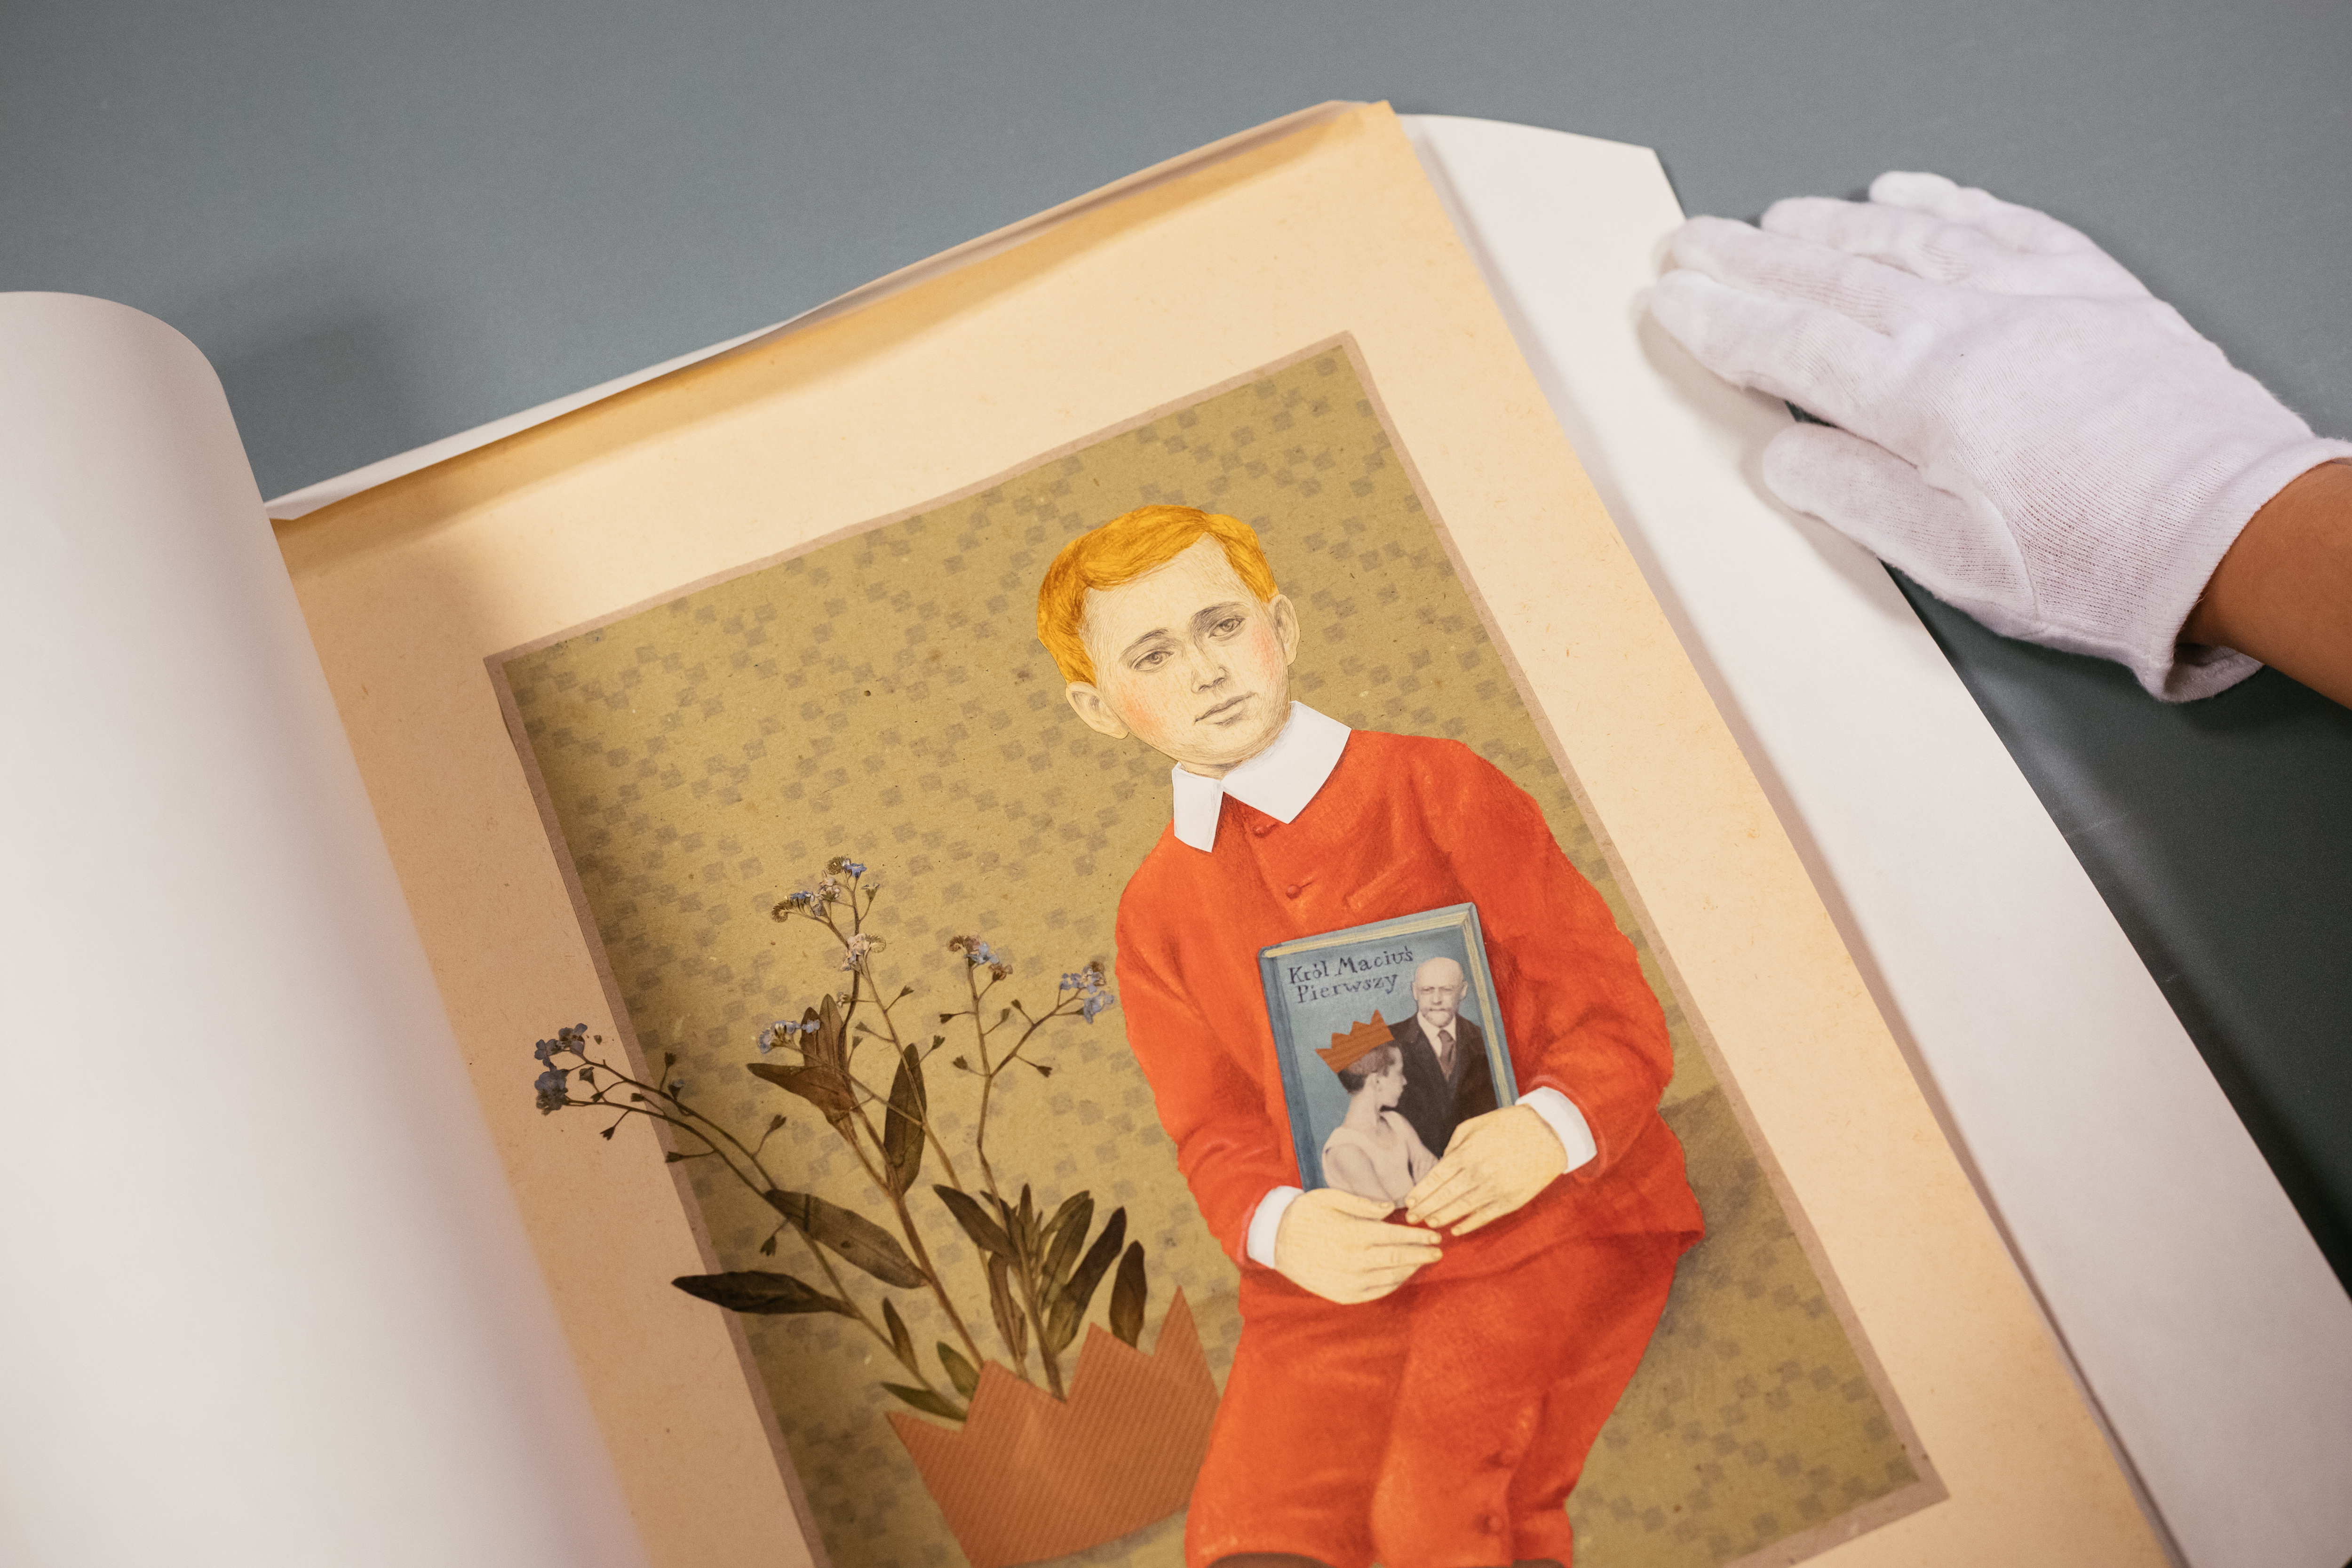 Obraz przedstawiający króla Maciusia -rudego chłopca w czerwonej marynarce i czerwonych spodniach do połowy nóg, trzymającego przy pasie, okładką do widza, książkę. Na lewo od chłopca - niebieskie kwiatki, wystające z brązowej schematycznej korony.